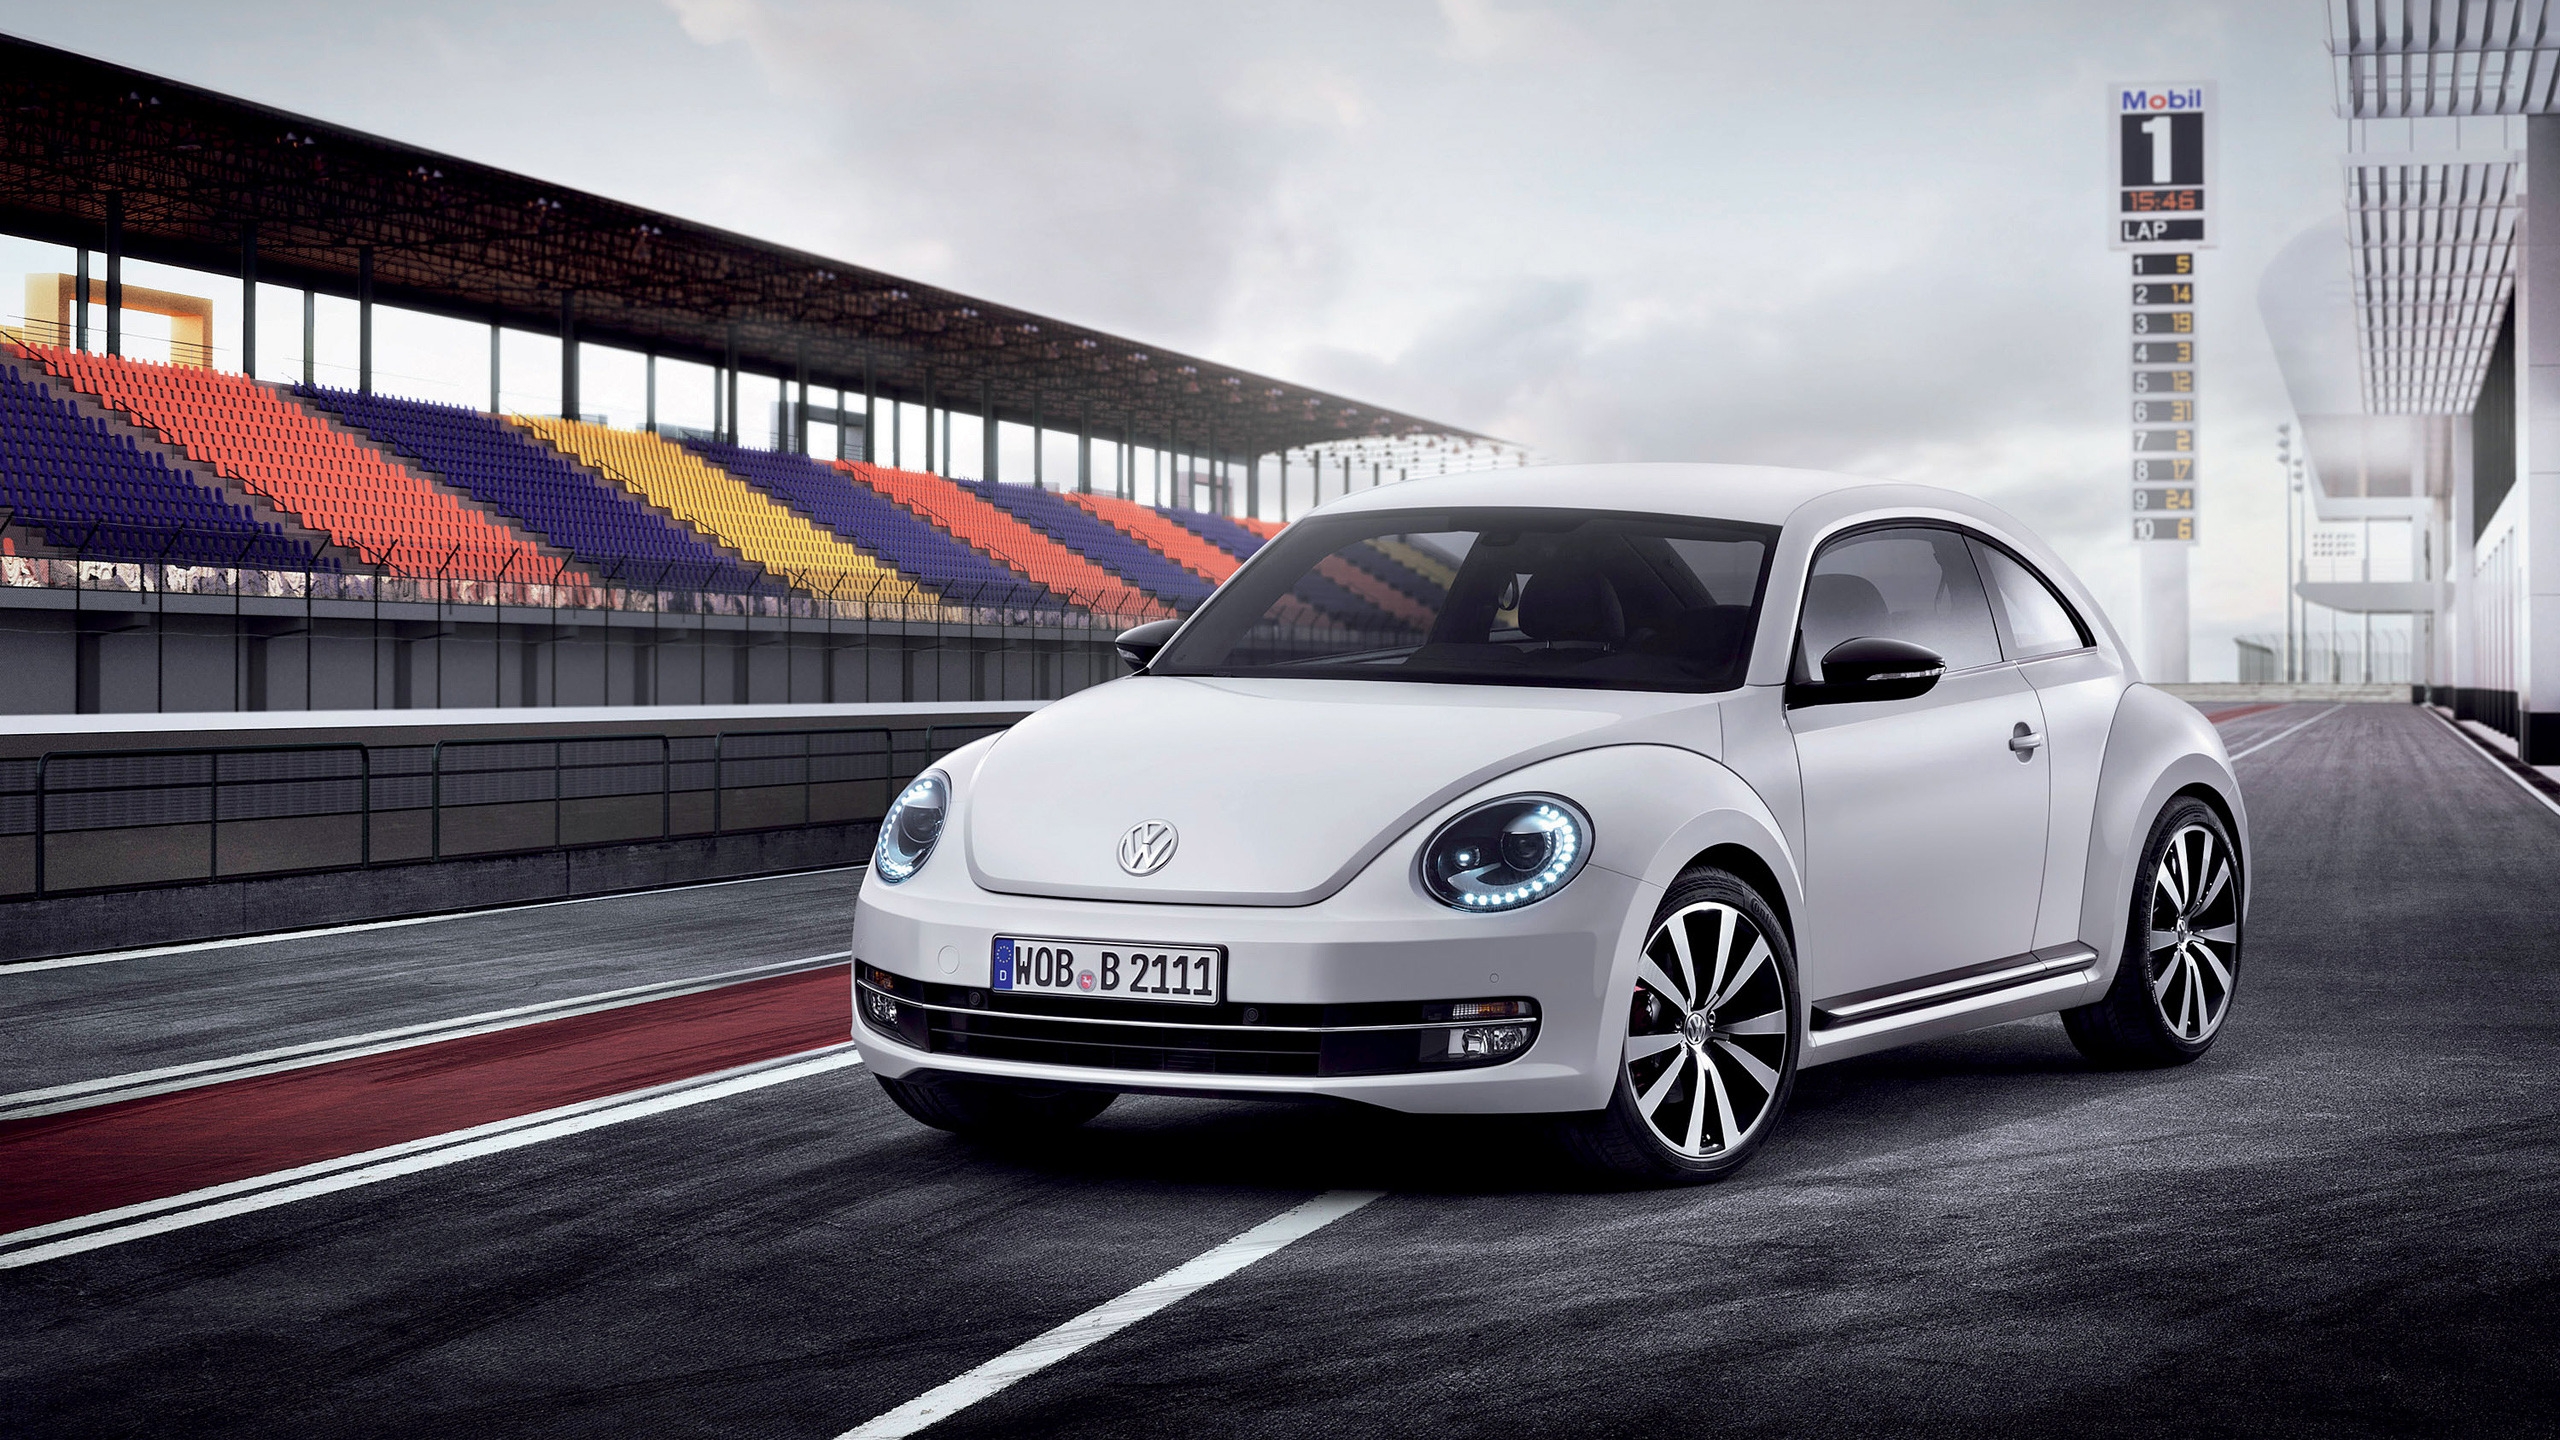 Volkswagen Beetle 2012 for 2560x1440 HDTV resolution